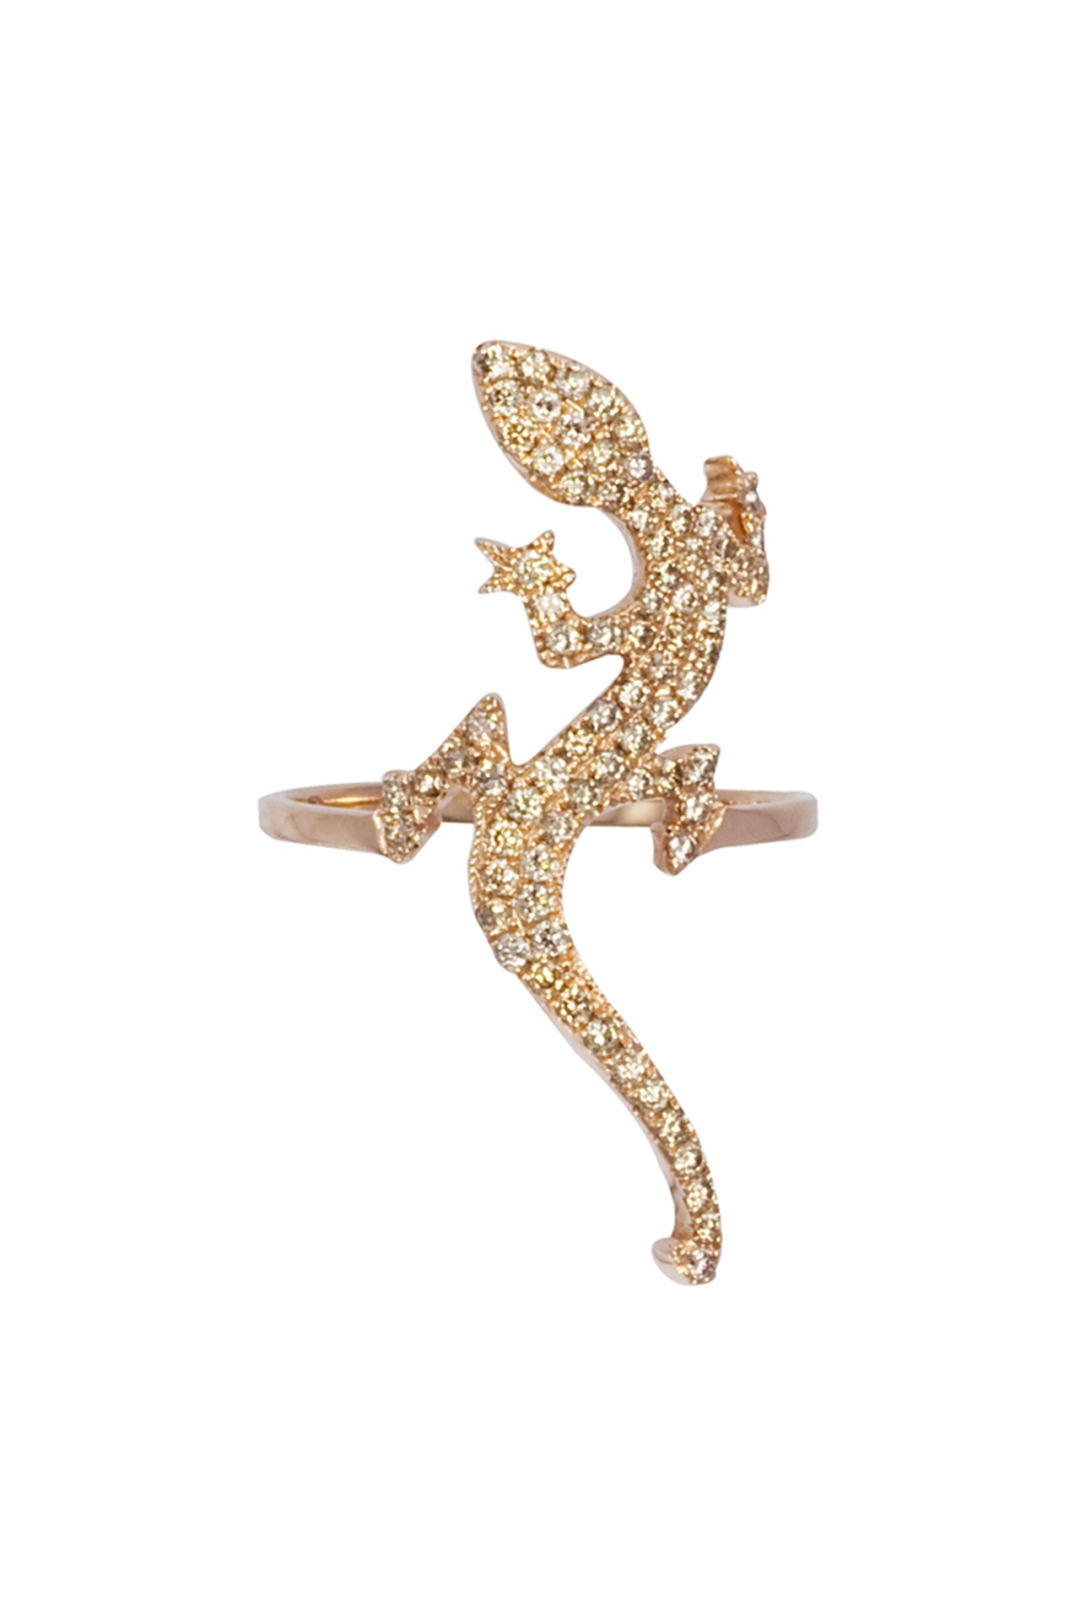 Photographie packshot sur fond blanc de la bague Brightness en or rose et diamants : elle est composée d'un anneau fin surmonté d'une salamandre incrustée de diamants.